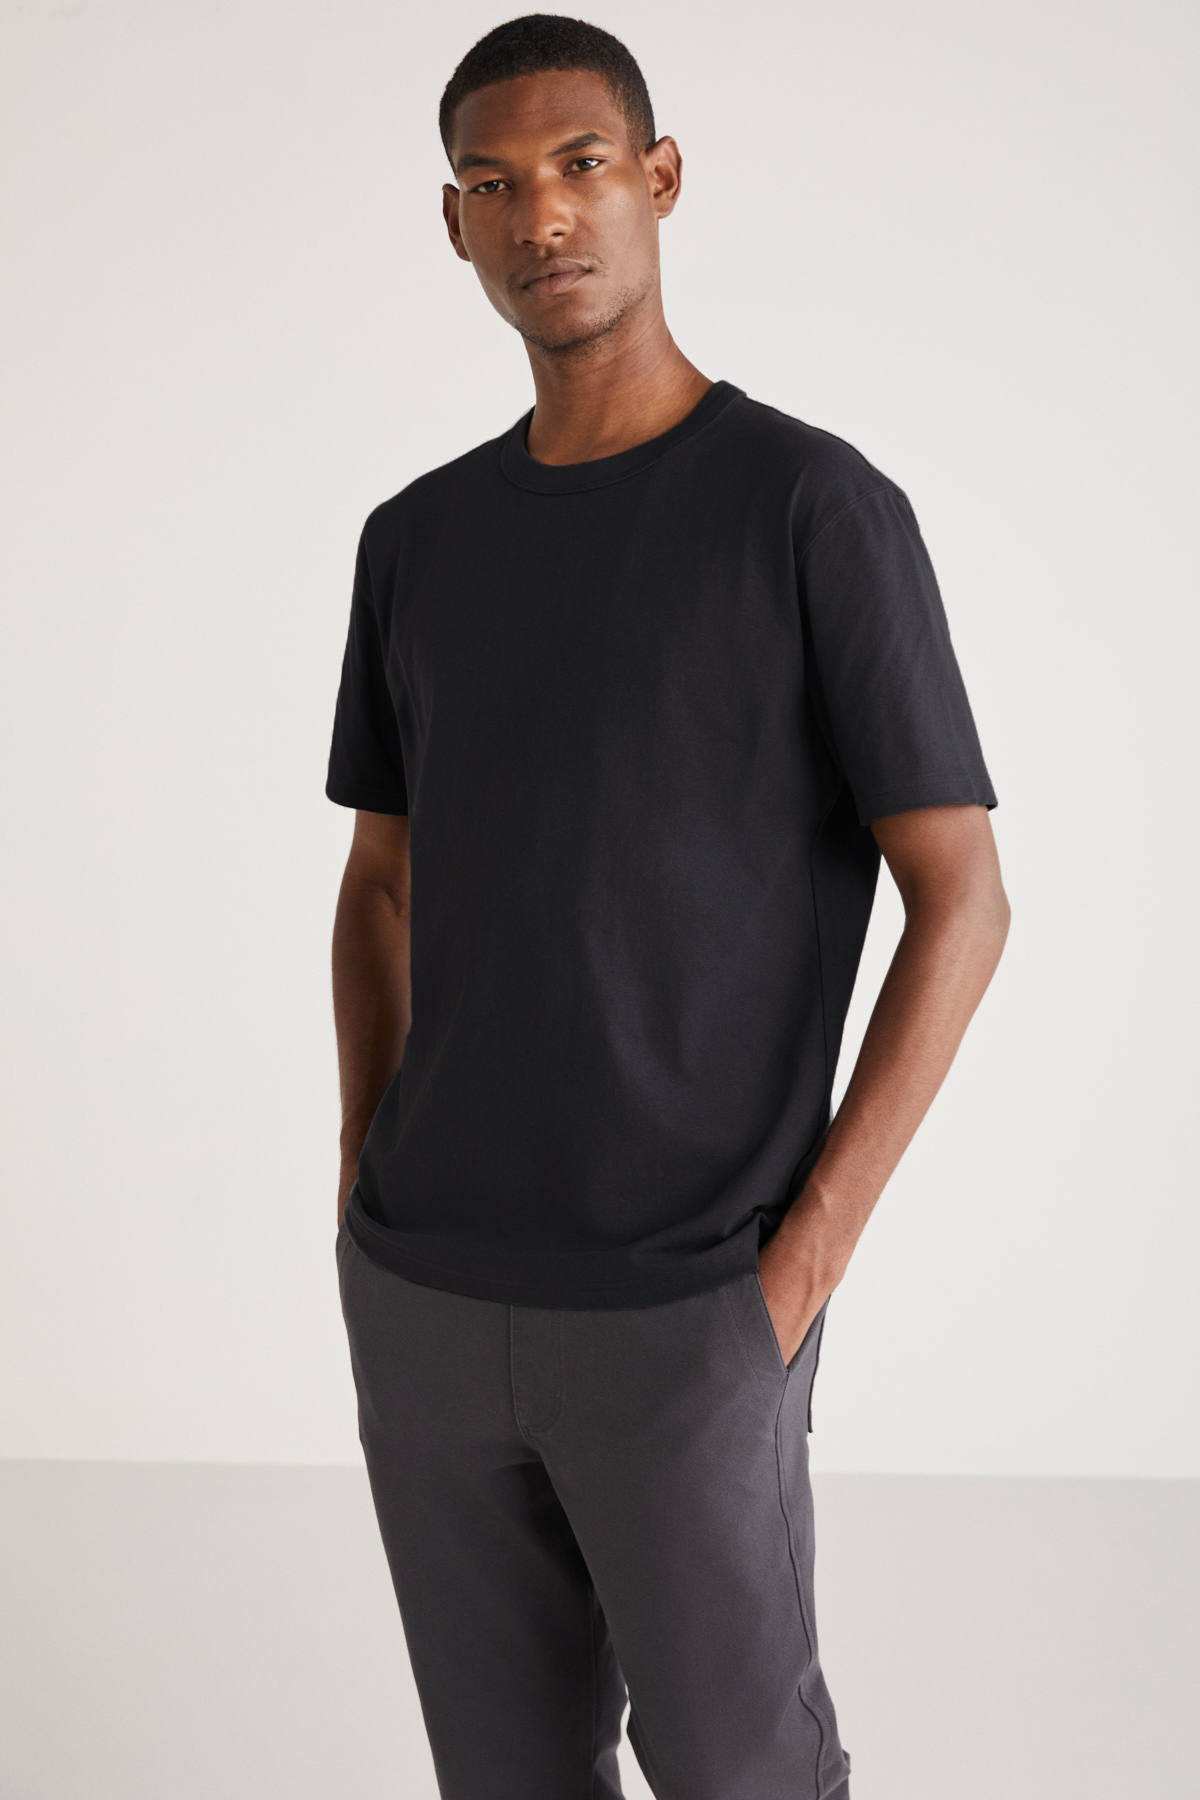 Levně GRIMELANGE Curtis Men's Comfort Fit Thick Textured Recycle 100% Cotton Black T-shirt